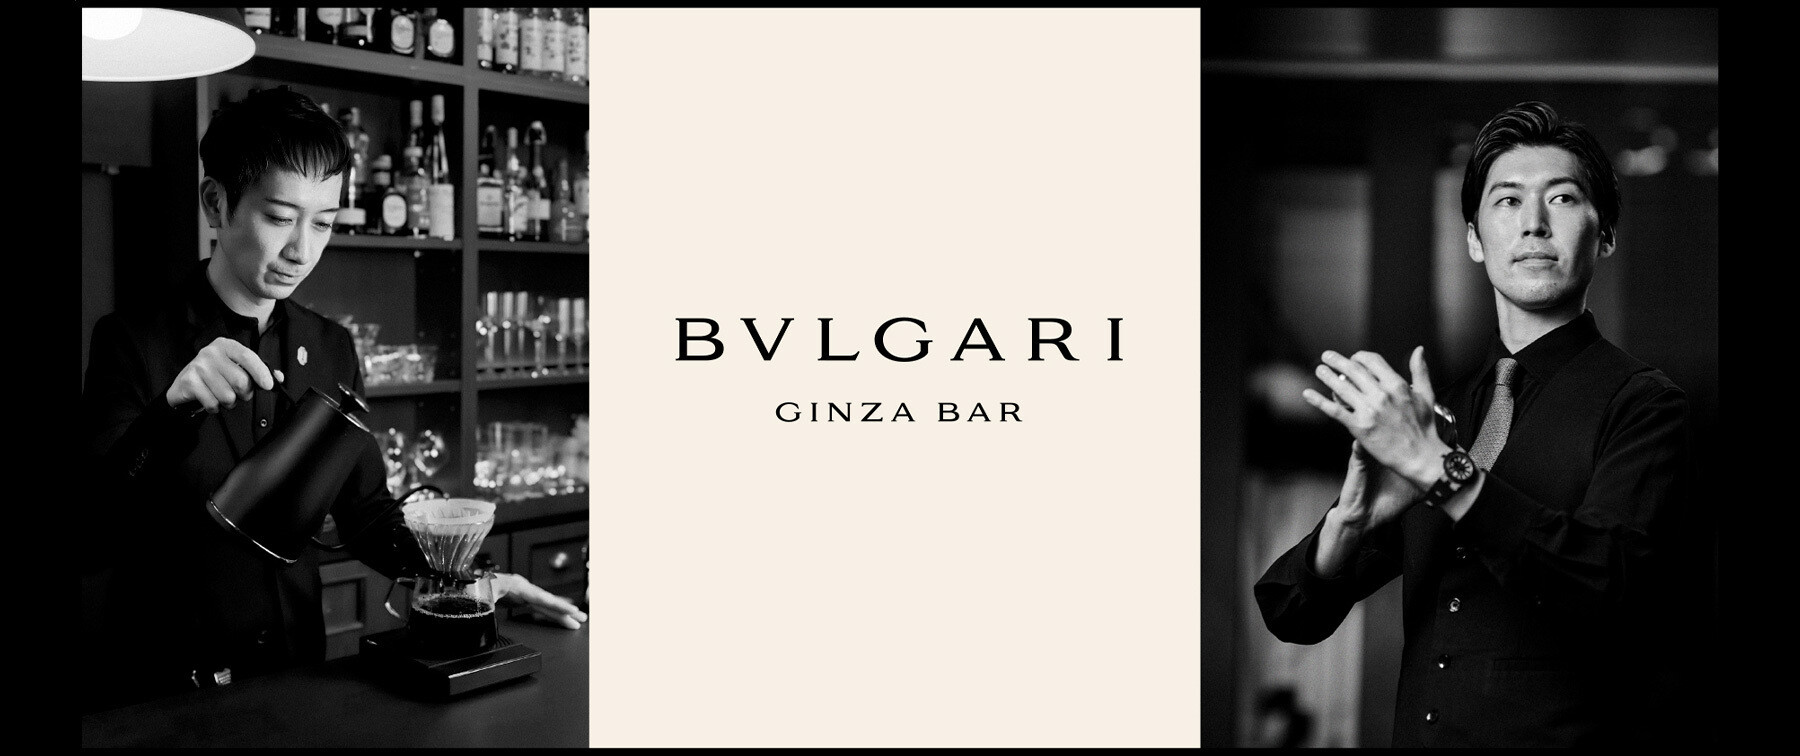 [5/24限定イベント]BVLGARI Ginza Bar & Mr.Fumiaki Nozato from ISTA COFFEE ELEMENTSのカバー画像